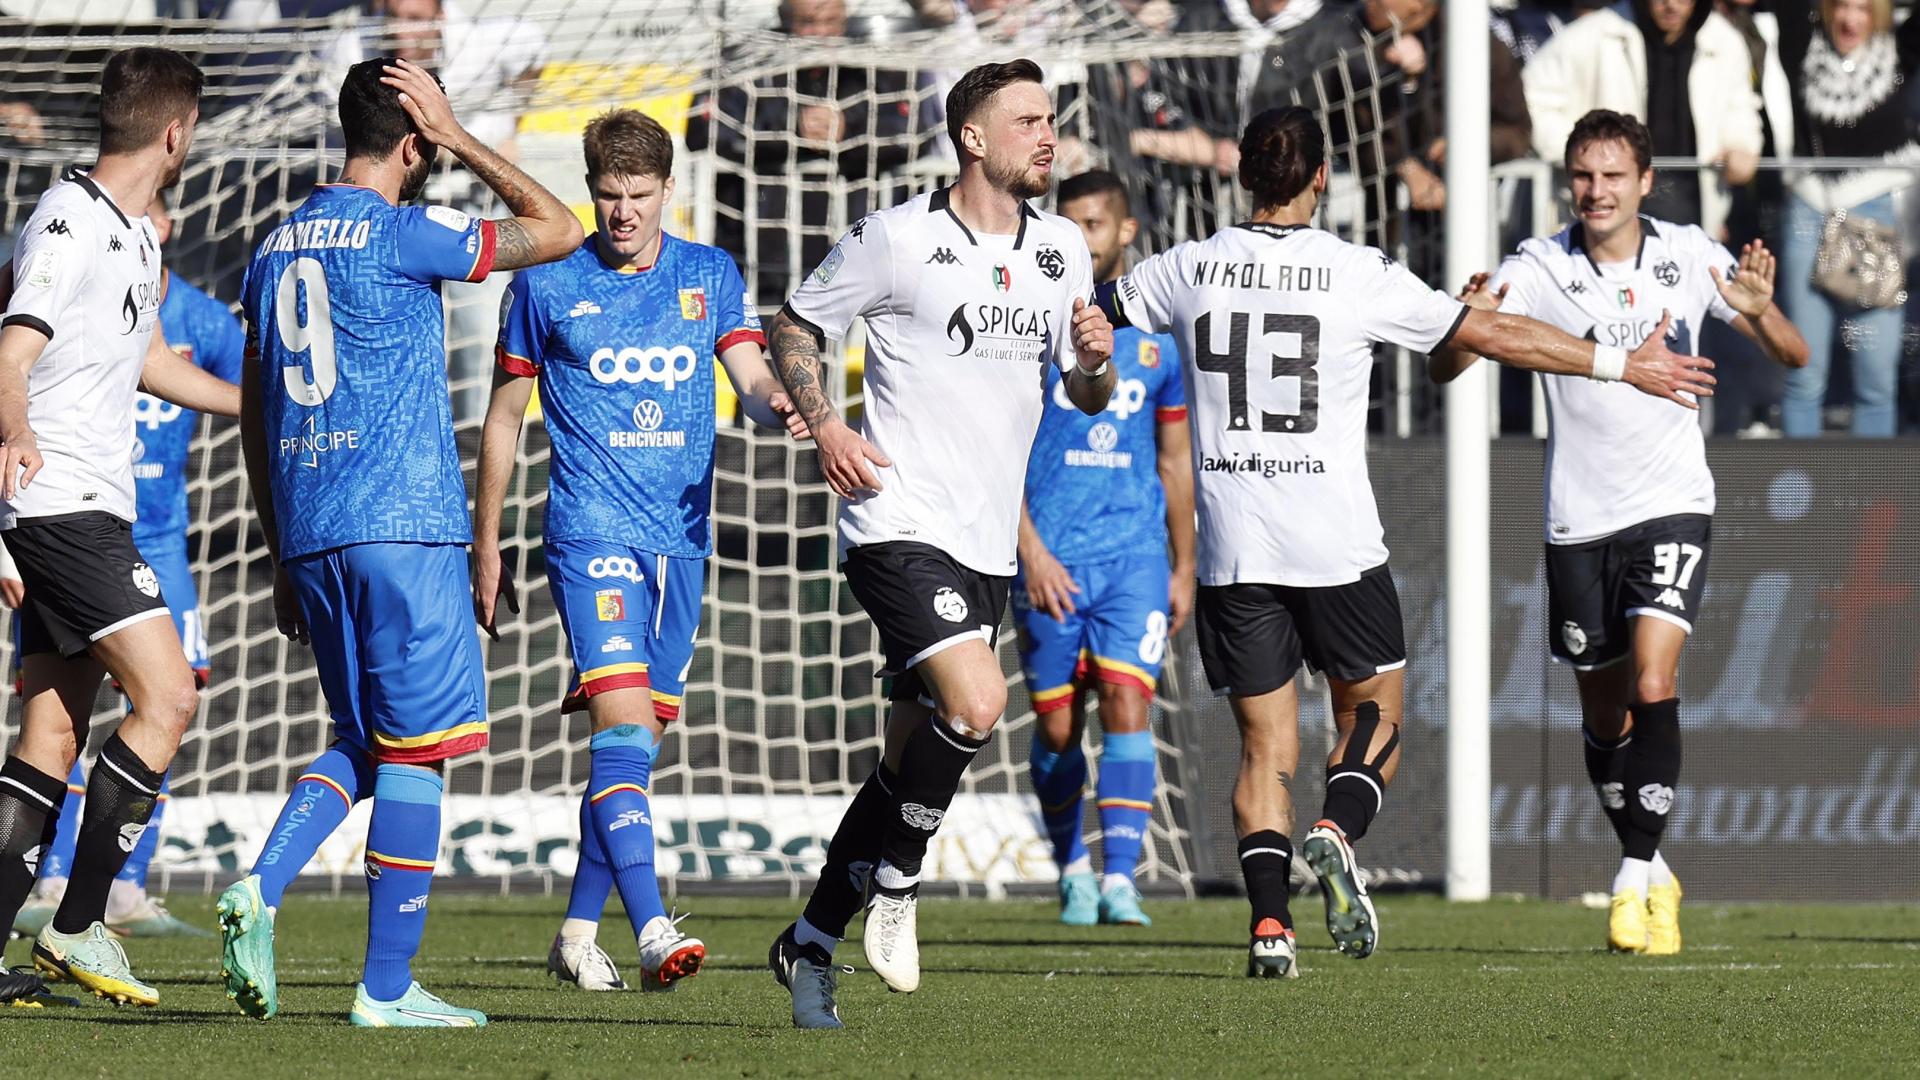 Jagiello: "Contento per il gol e per la nostra prestazione; a Terni per fare risultato"